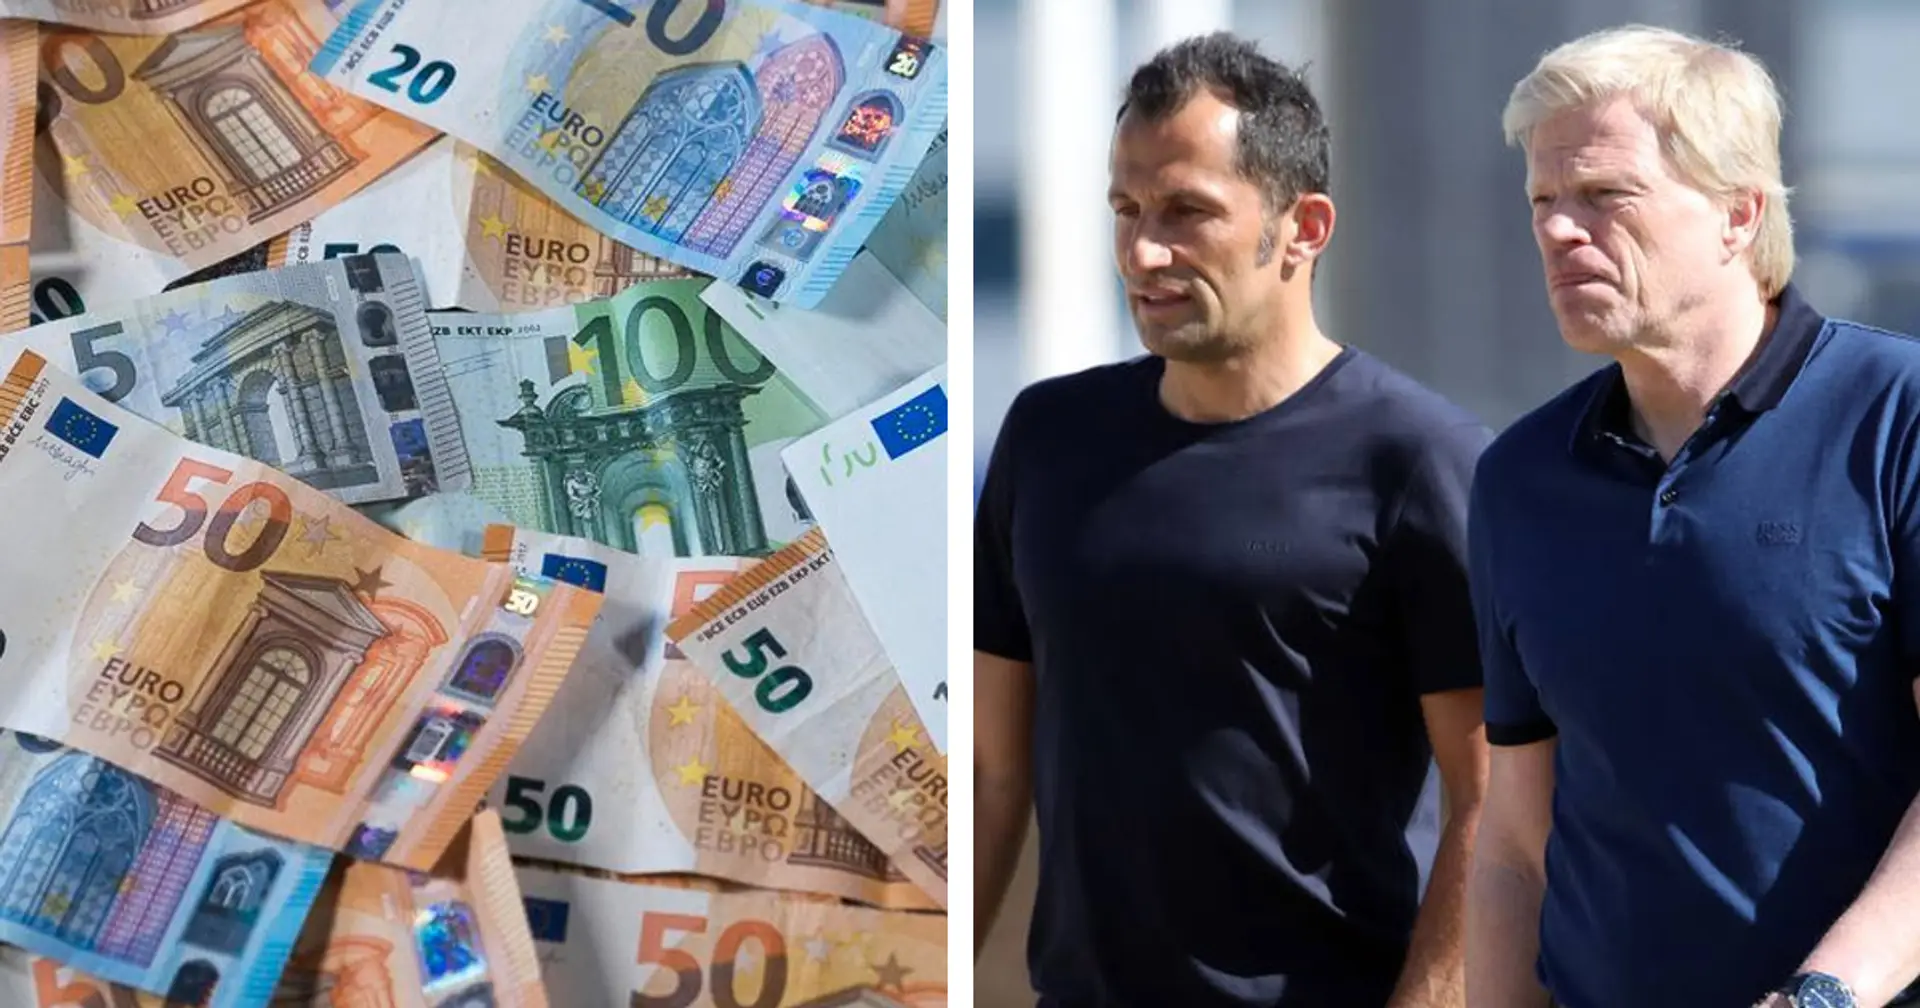 ❓ DISKUSSIONSTHEMA: Wie viel Geld muss Bayern im Sommer ausgeben, um nächste Saison um die UCL zu kämpfen?